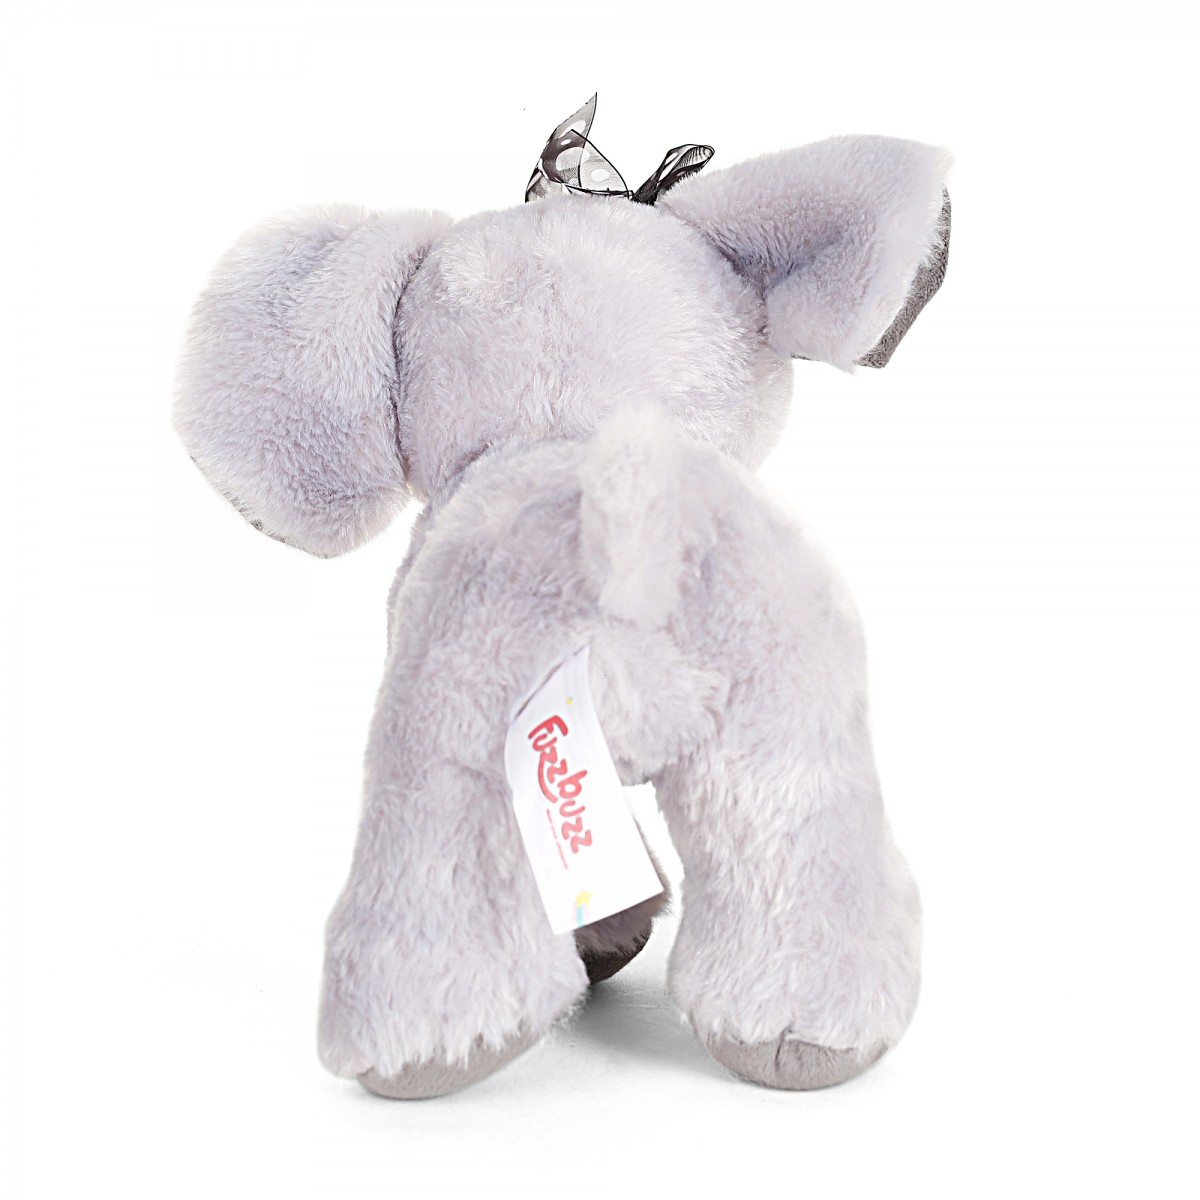 Fuzzbuzz Elephant, Soft Loys for Kids, 26cm, Grey